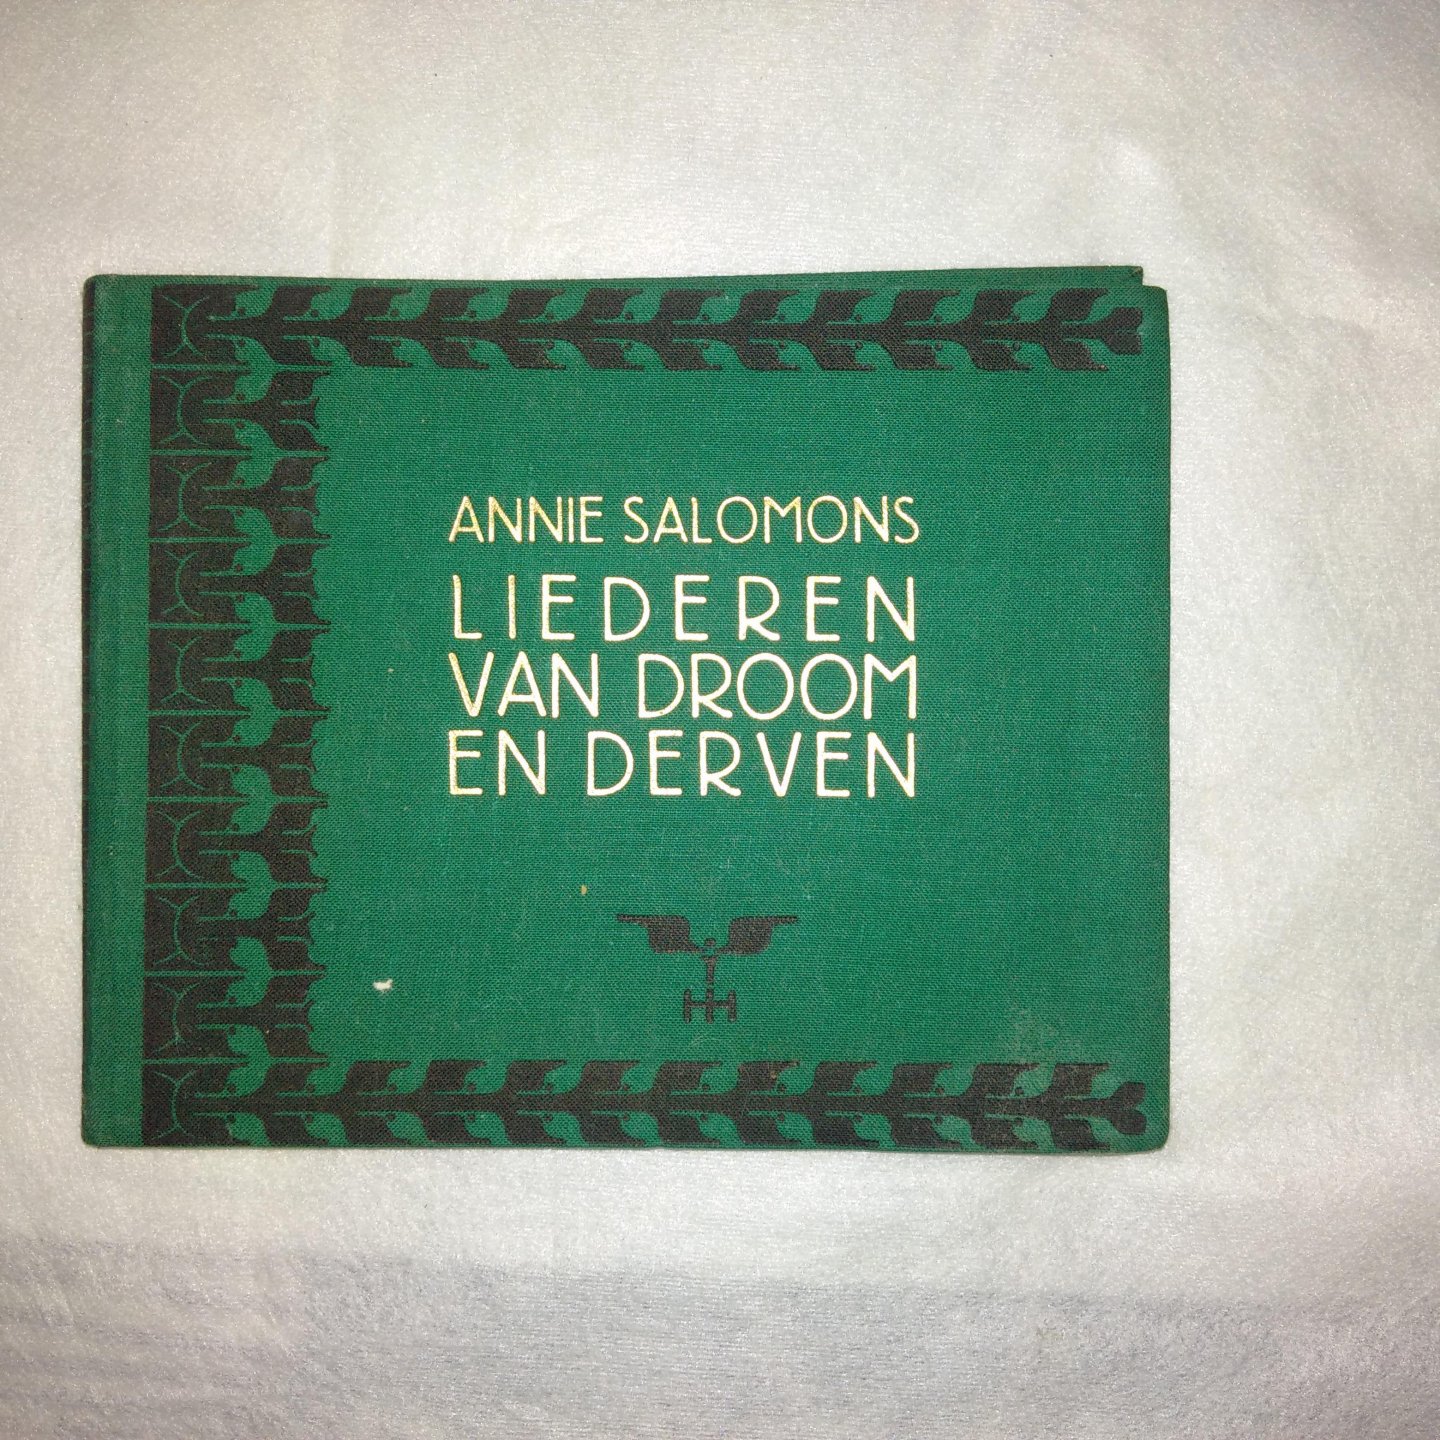 Salomon, Annie - Annie Salomon's liederen van droom en derven